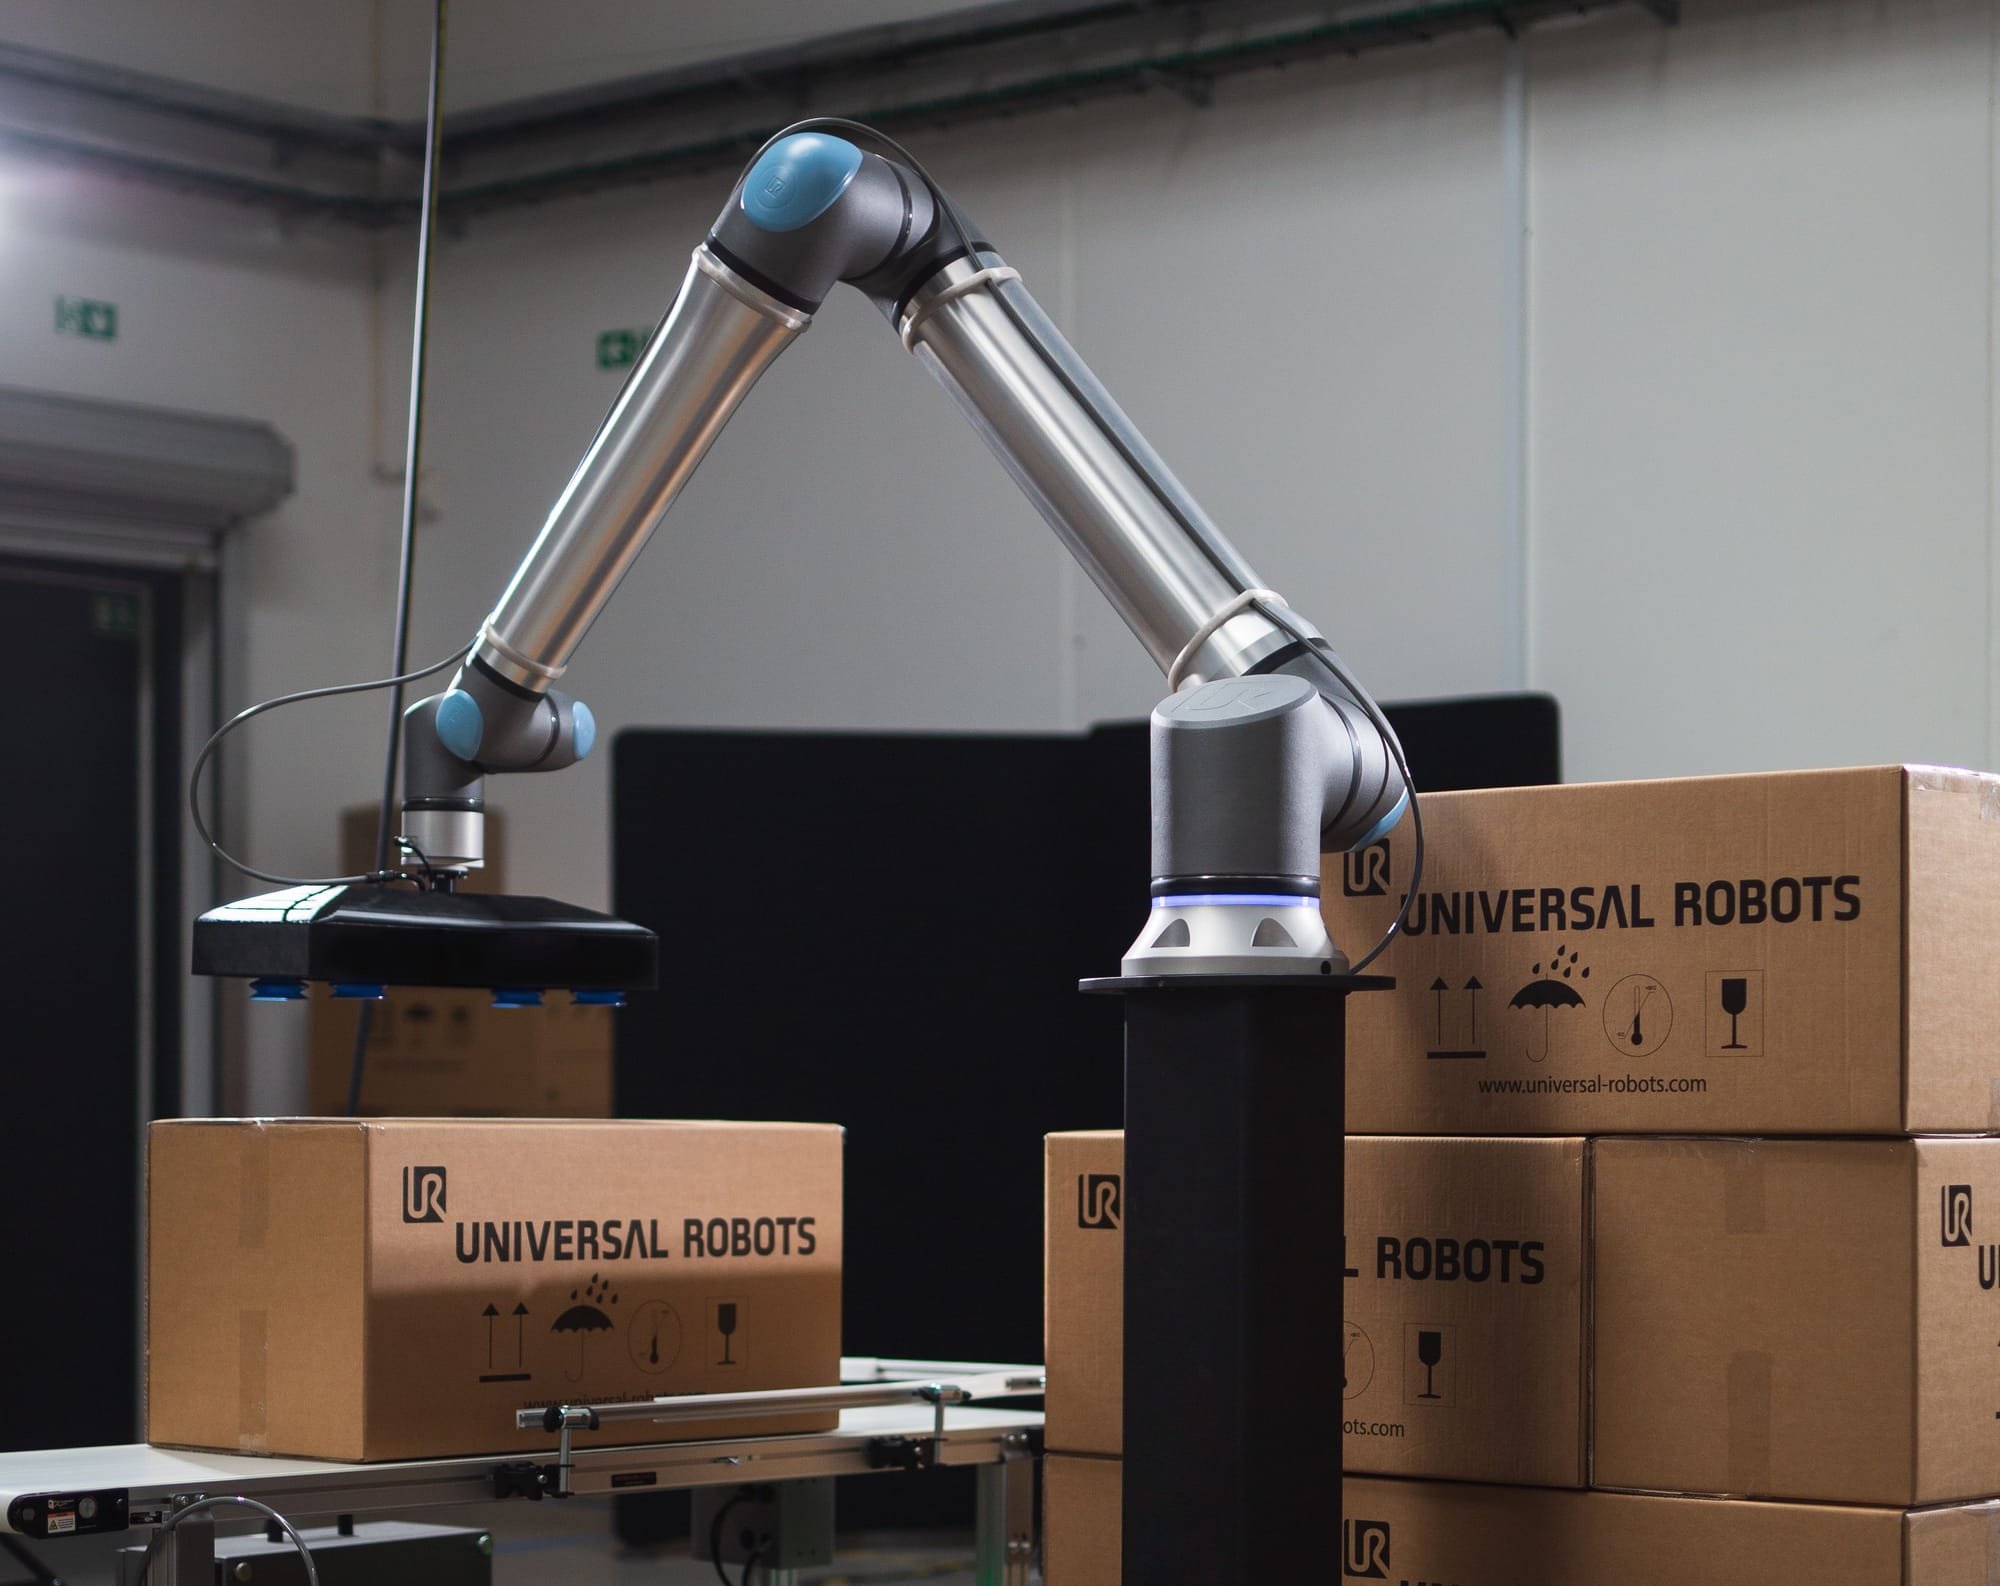 Universal Robots הכריזה על קובוט תעשייתי חדש עם יכולת העמסה של 20 ק"ג, מהיר יותר ובעל טווח פעולה גבוה יותר